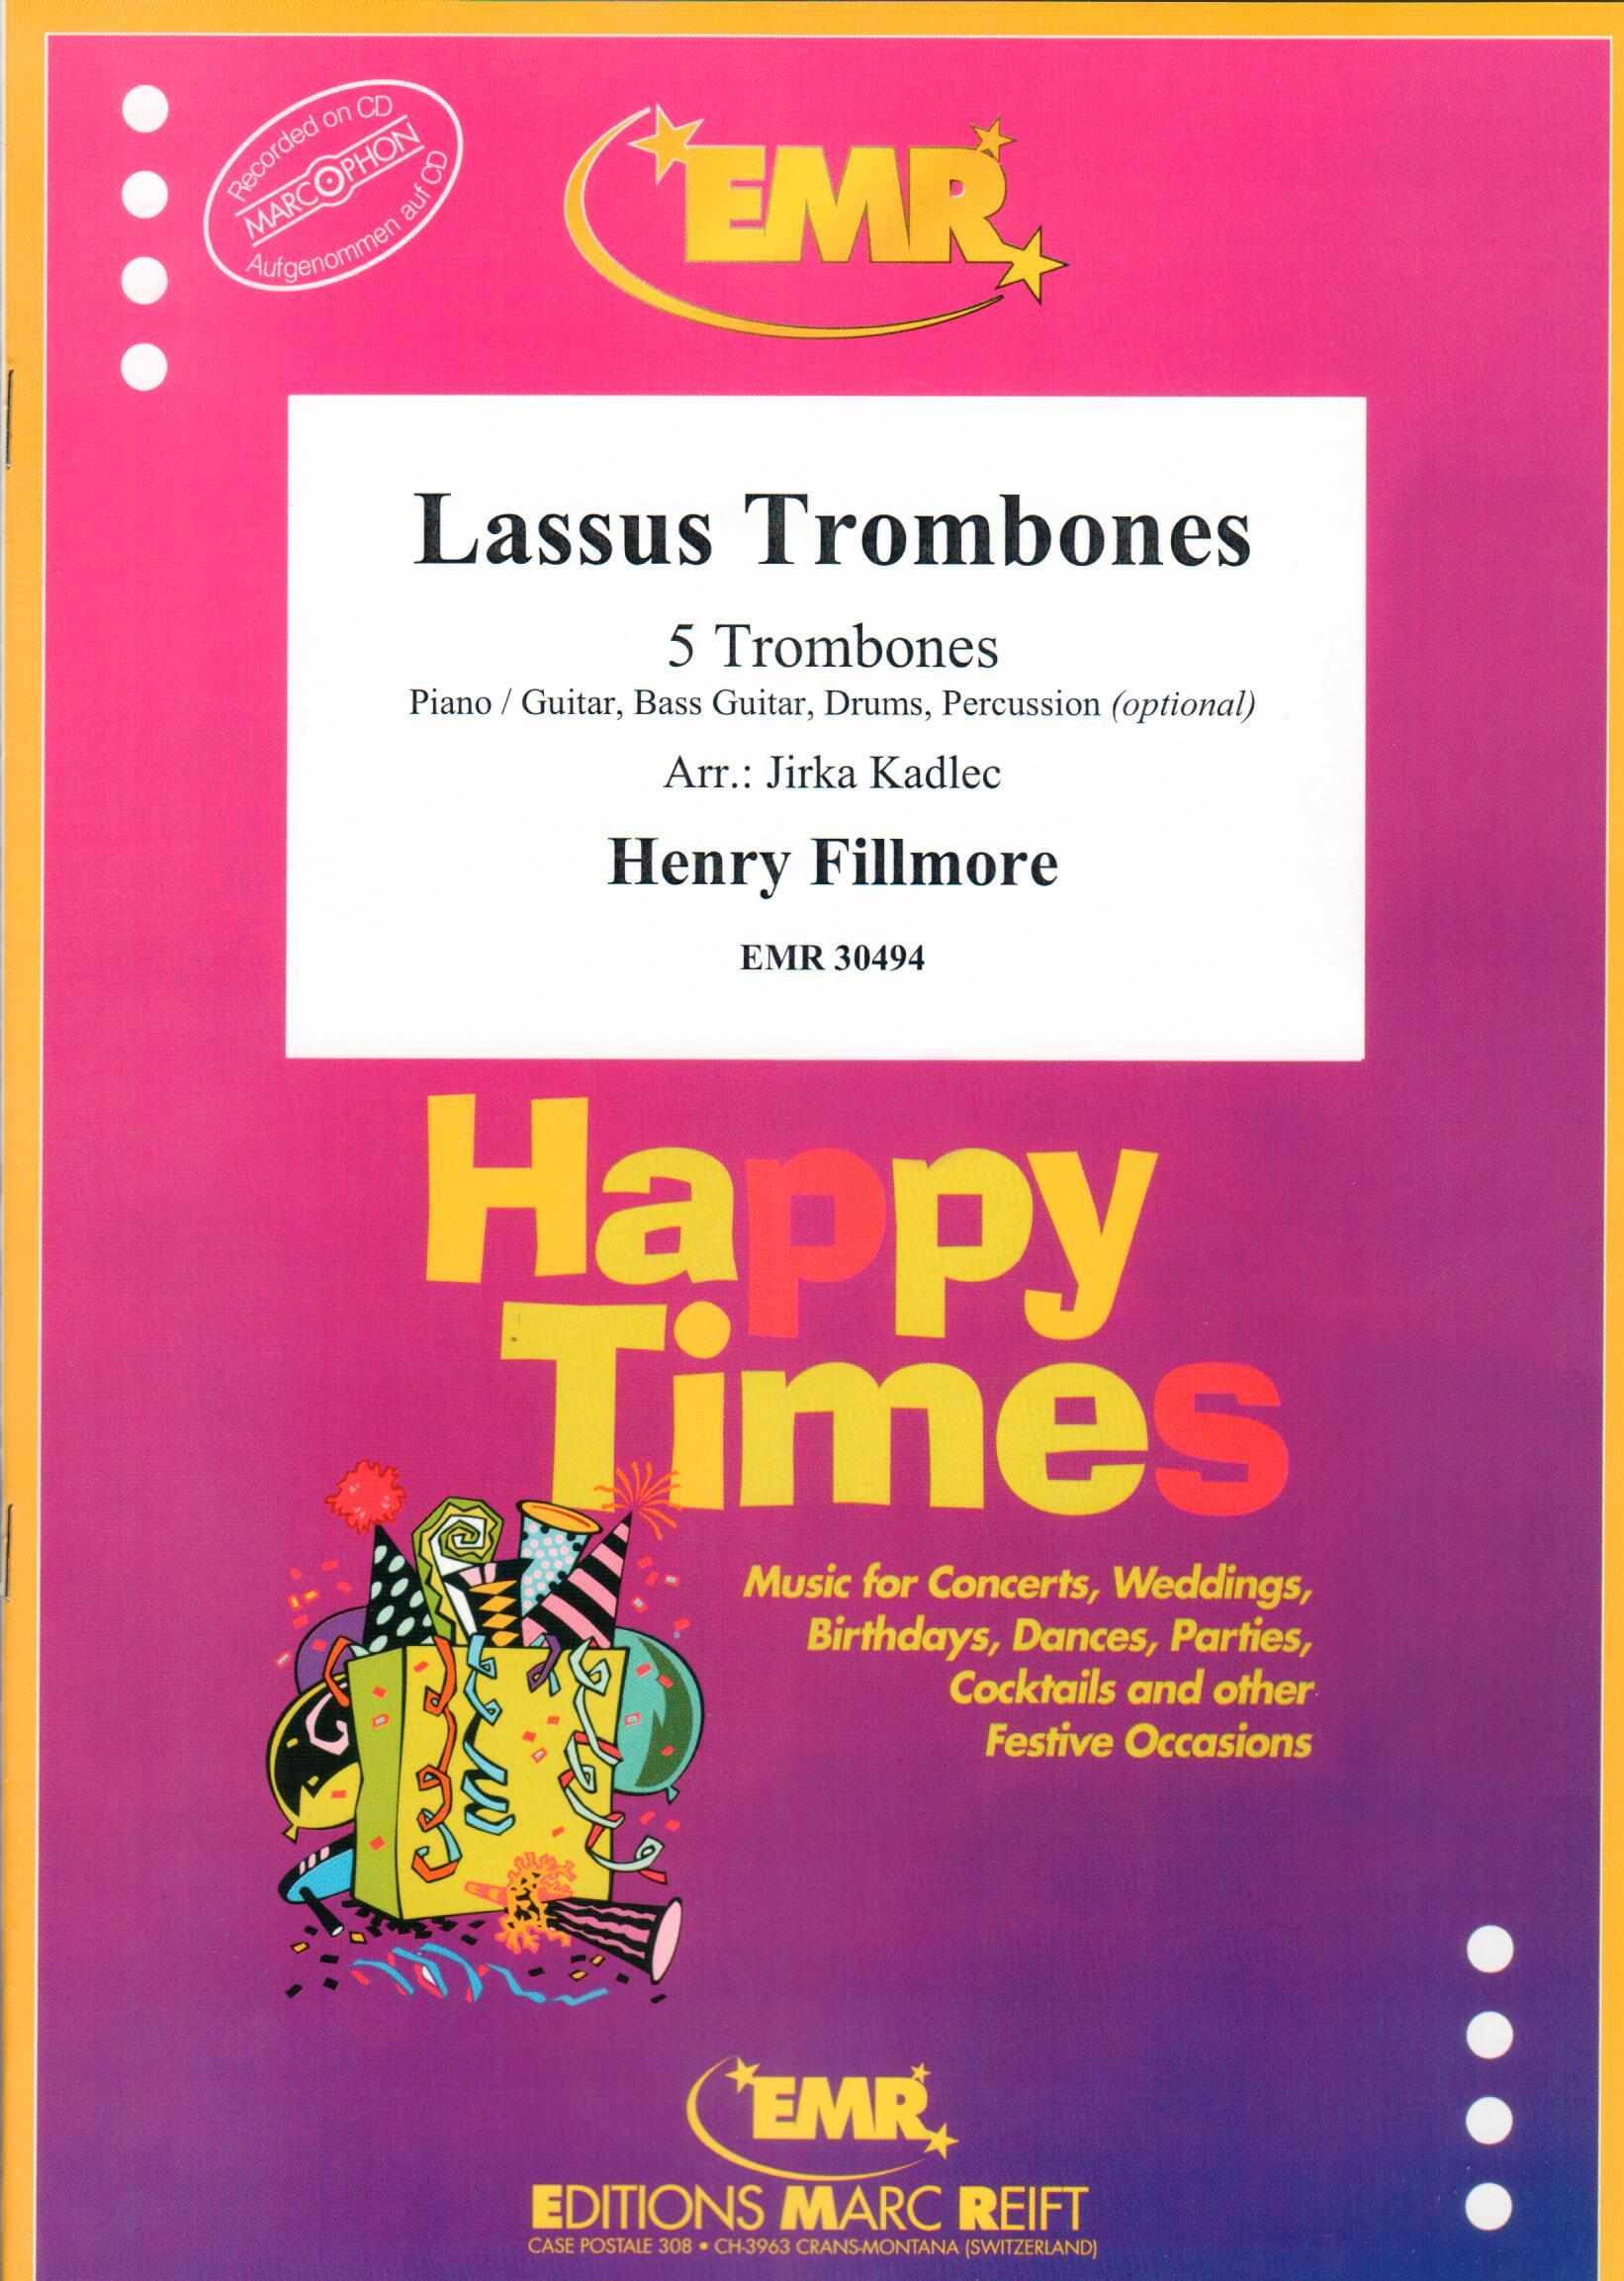 LASSUS TROMBONES, SOLOS - Trombone